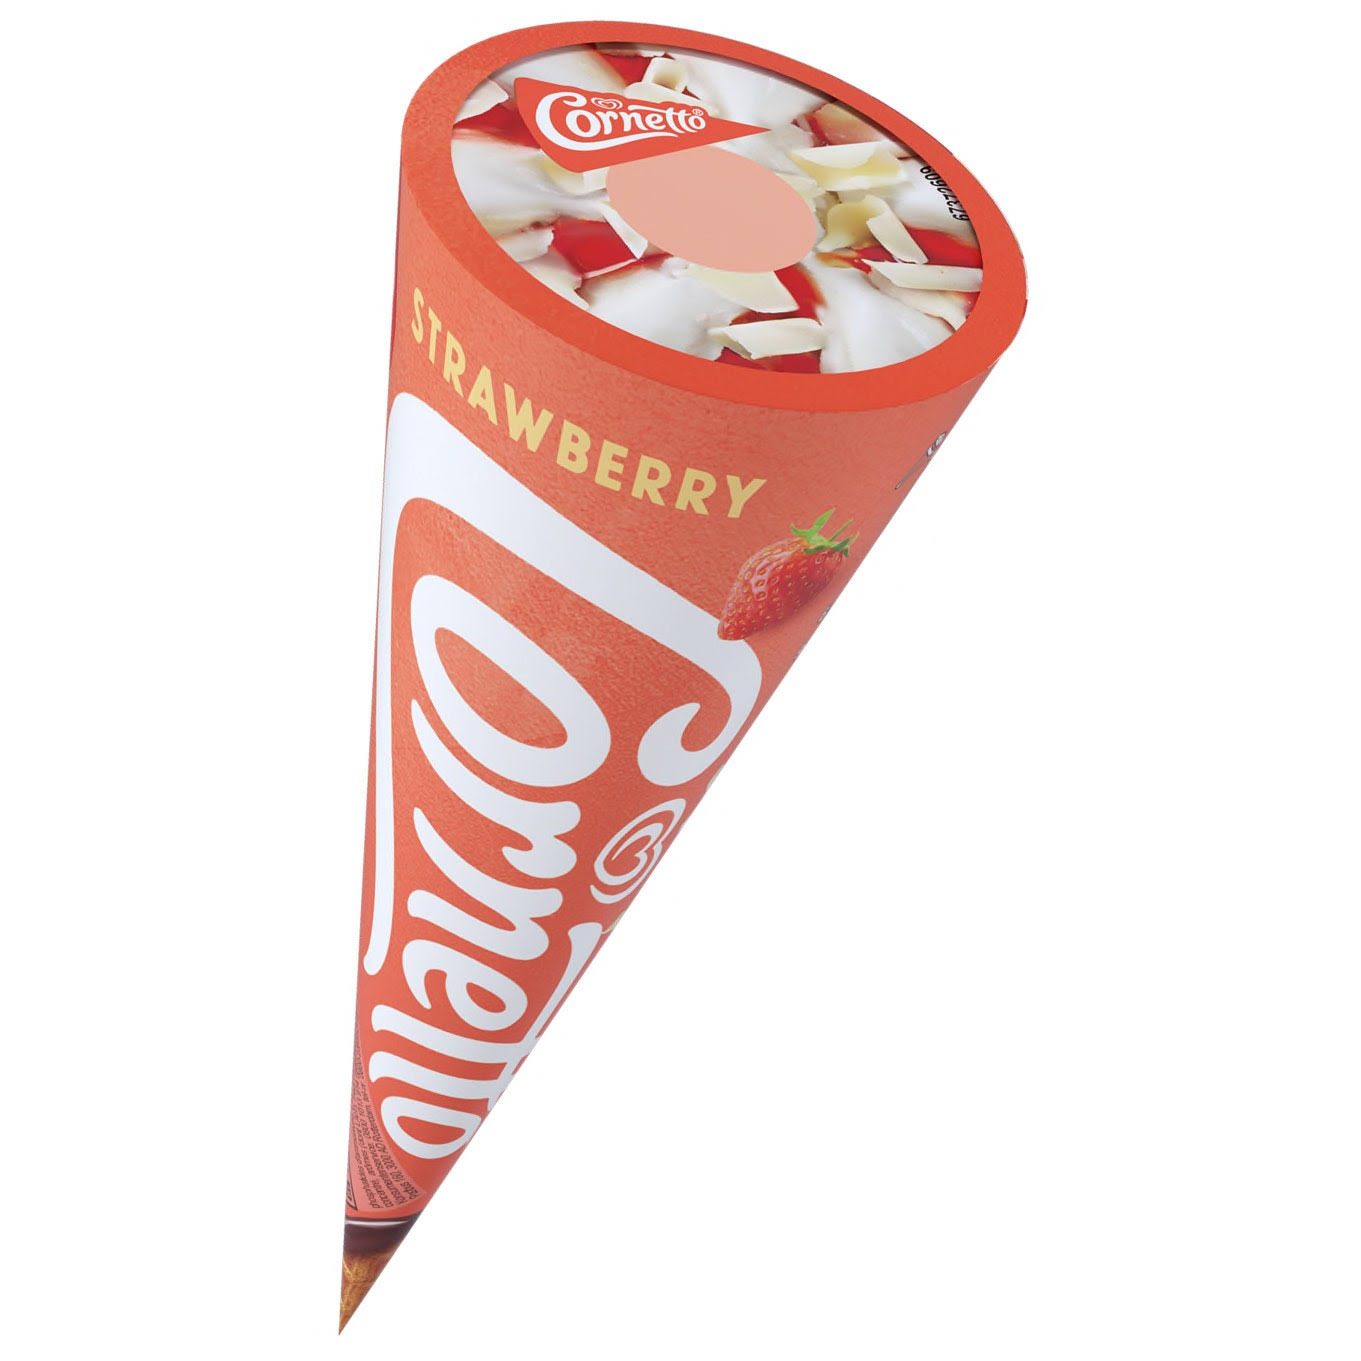 Cornetto Strawberry Ice Cream - 120ml